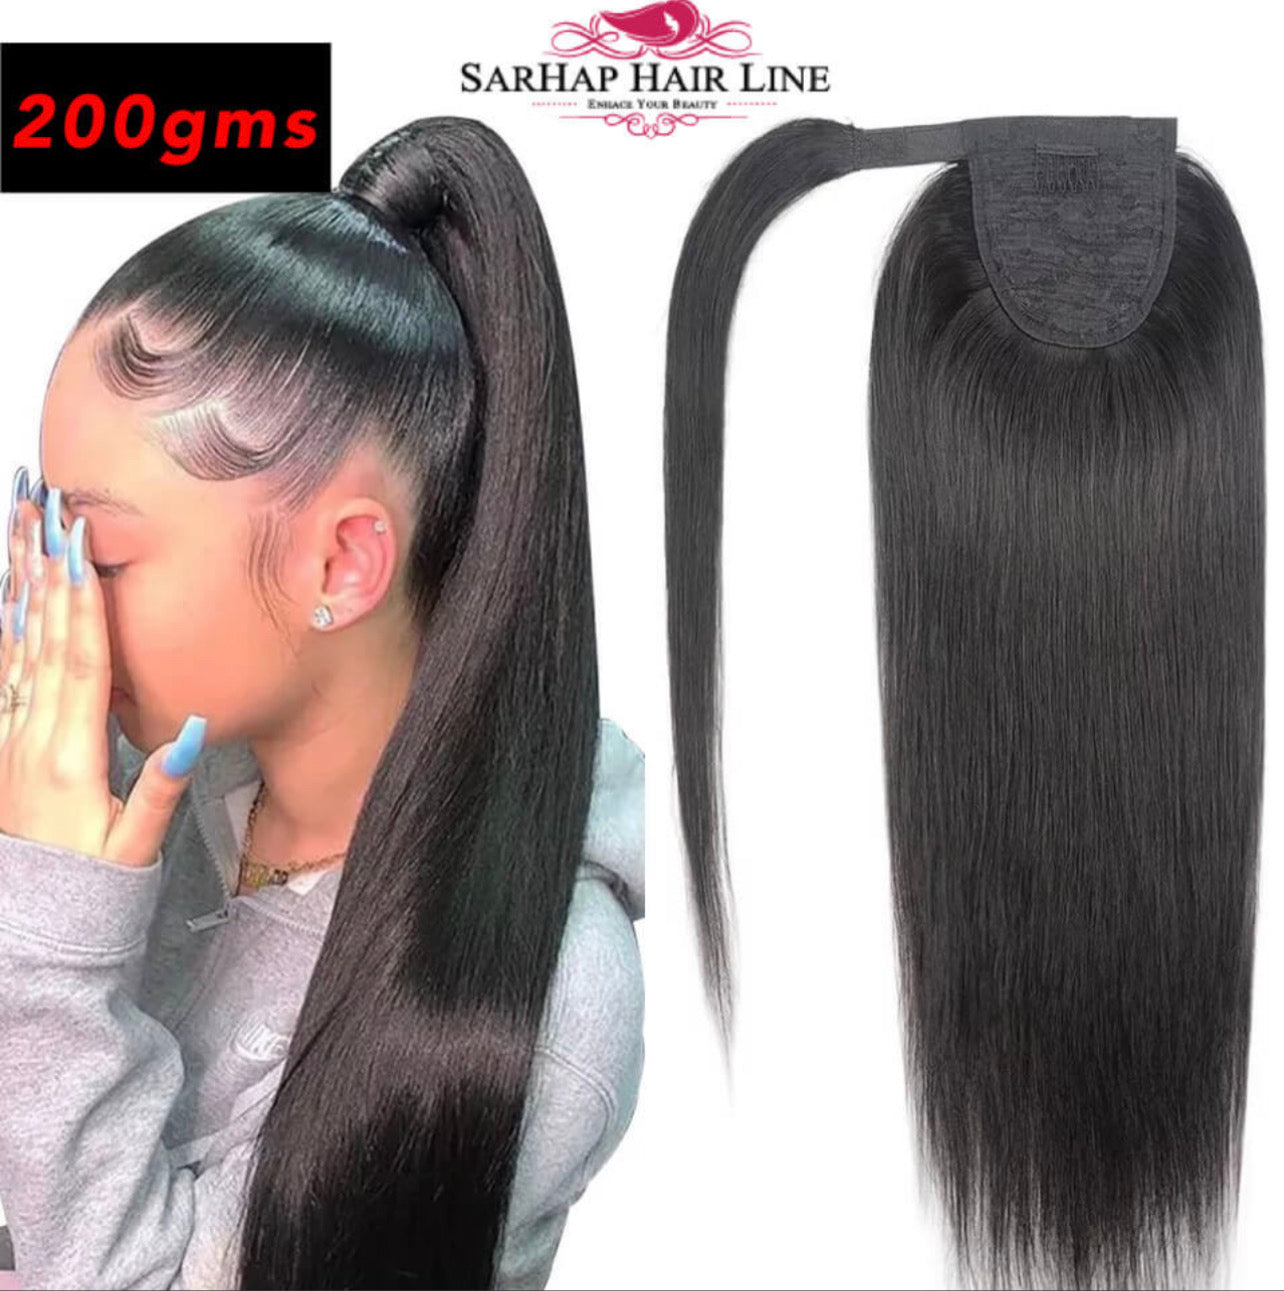 Sarhap Hair Line